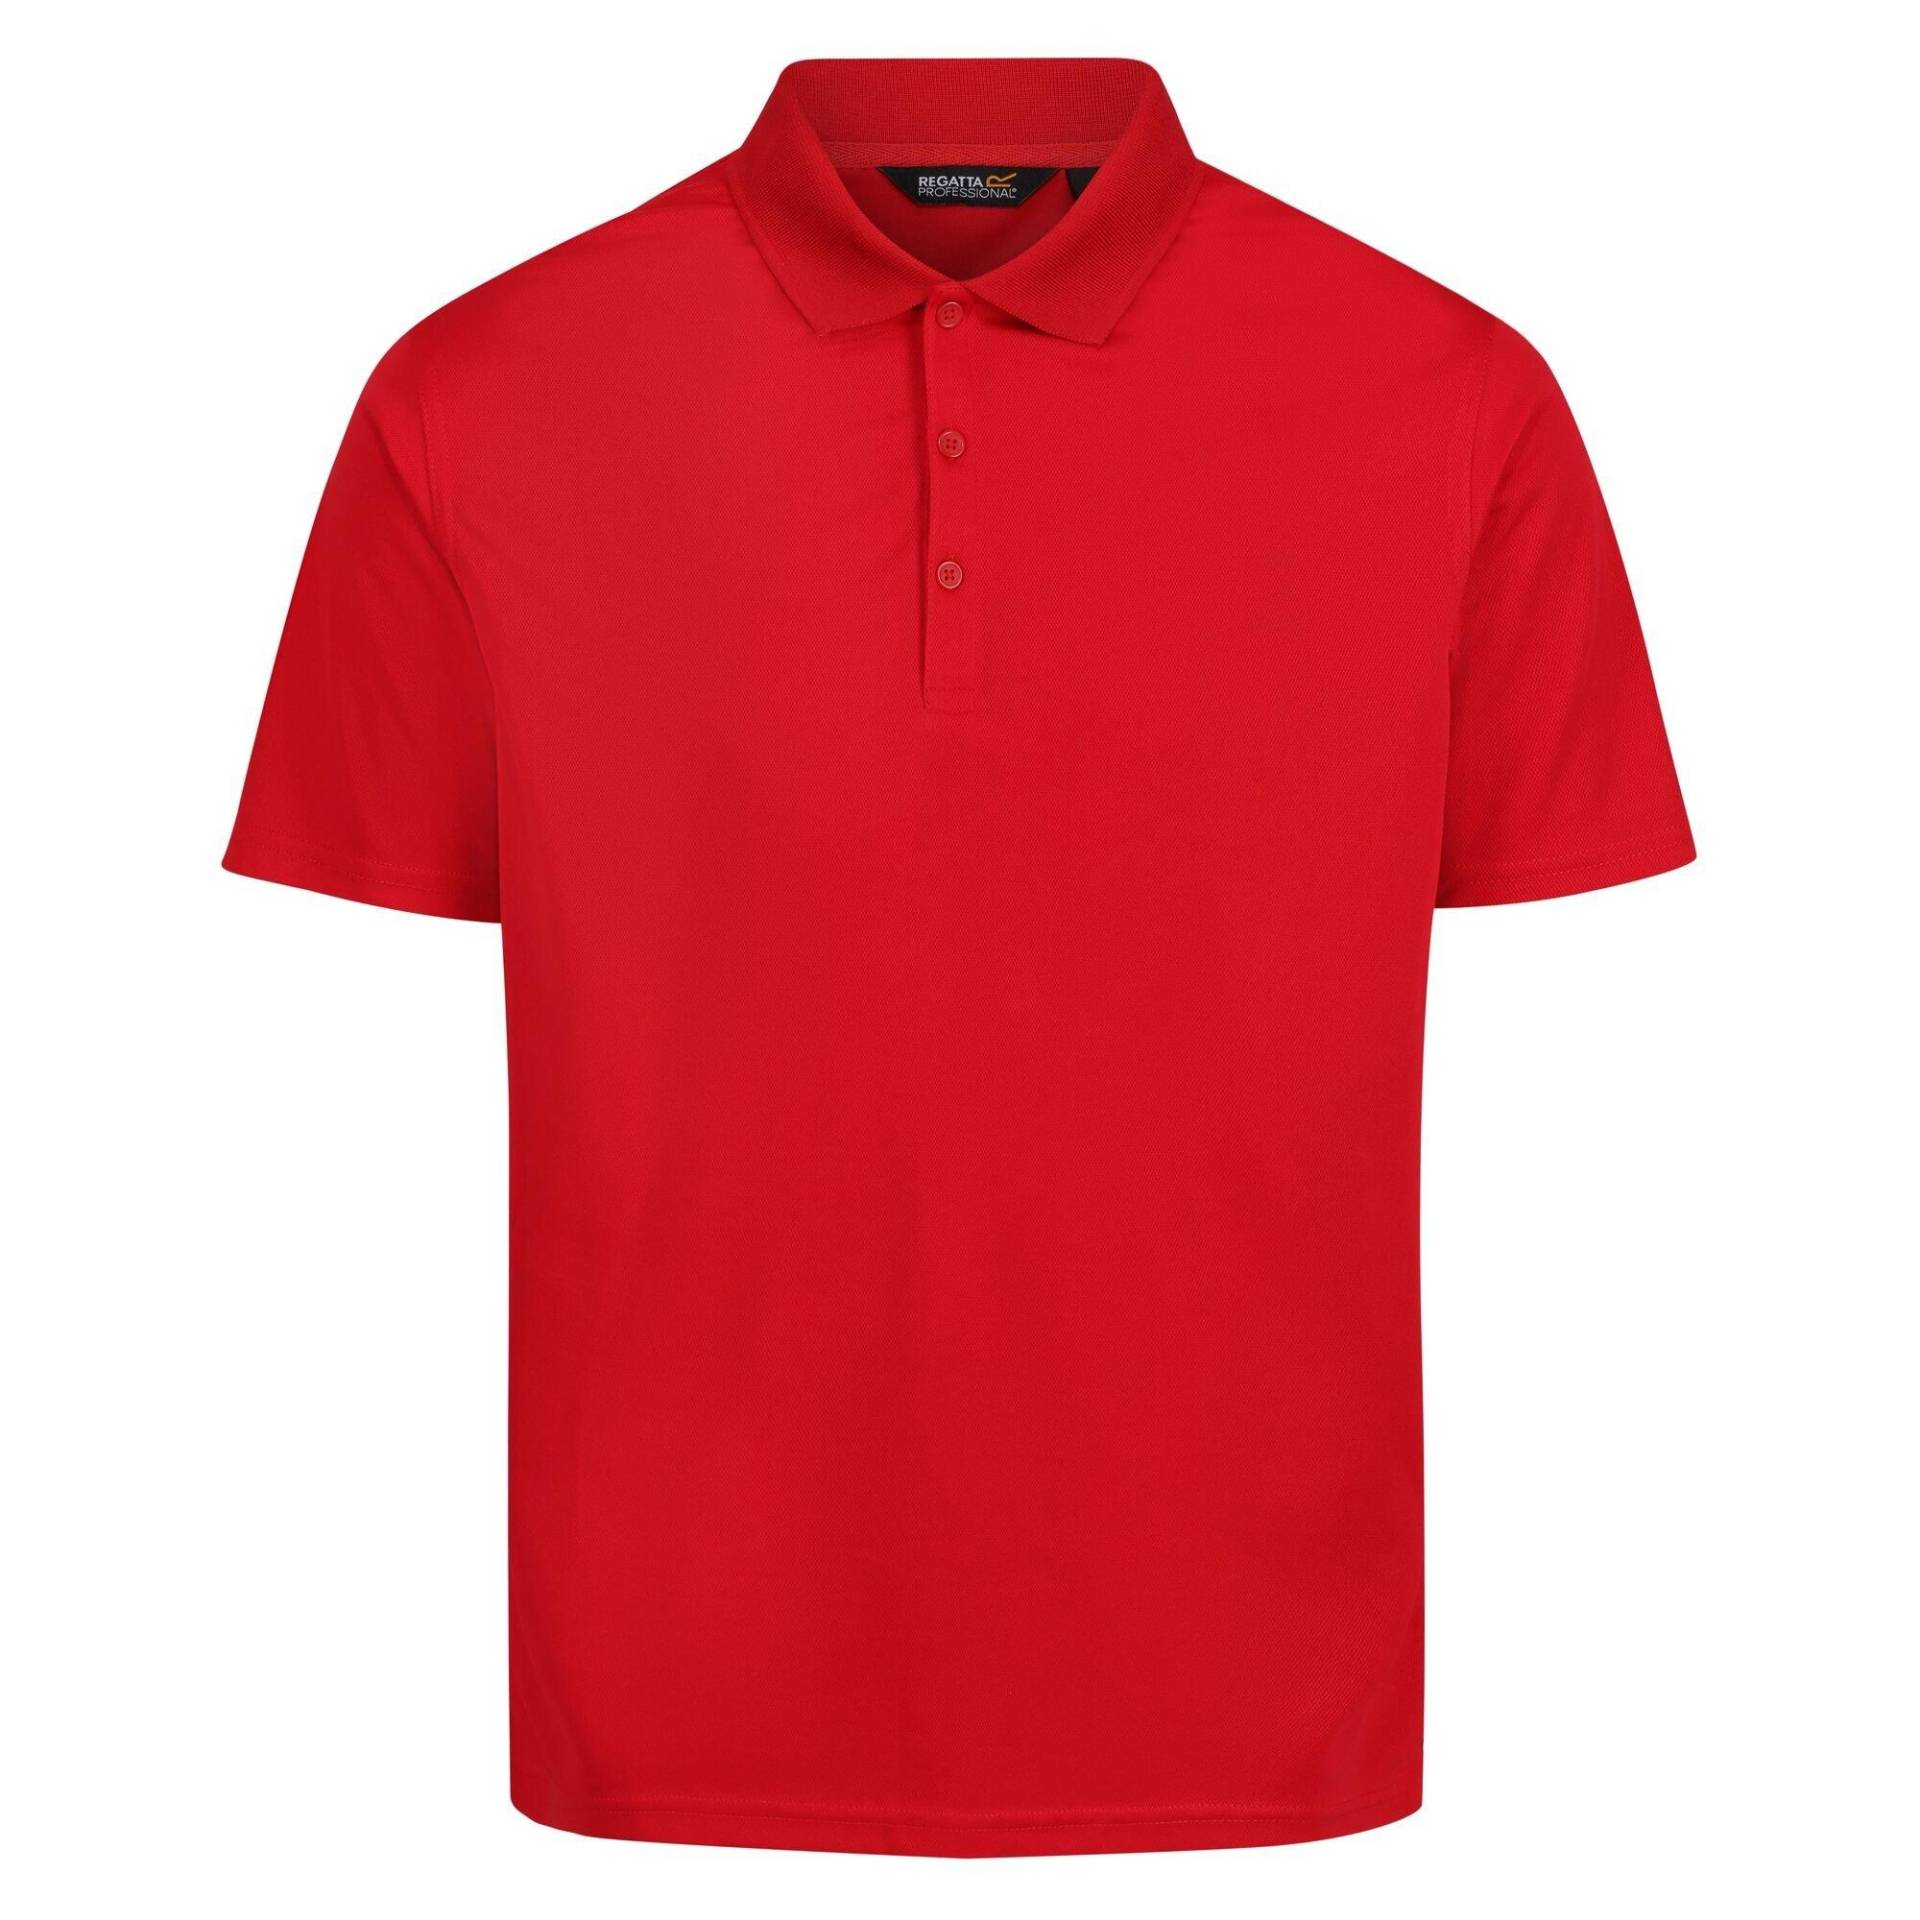 Pro Poloshirt Feuchtigkeitsabweisend Herren Rot Bunt M von Regatta